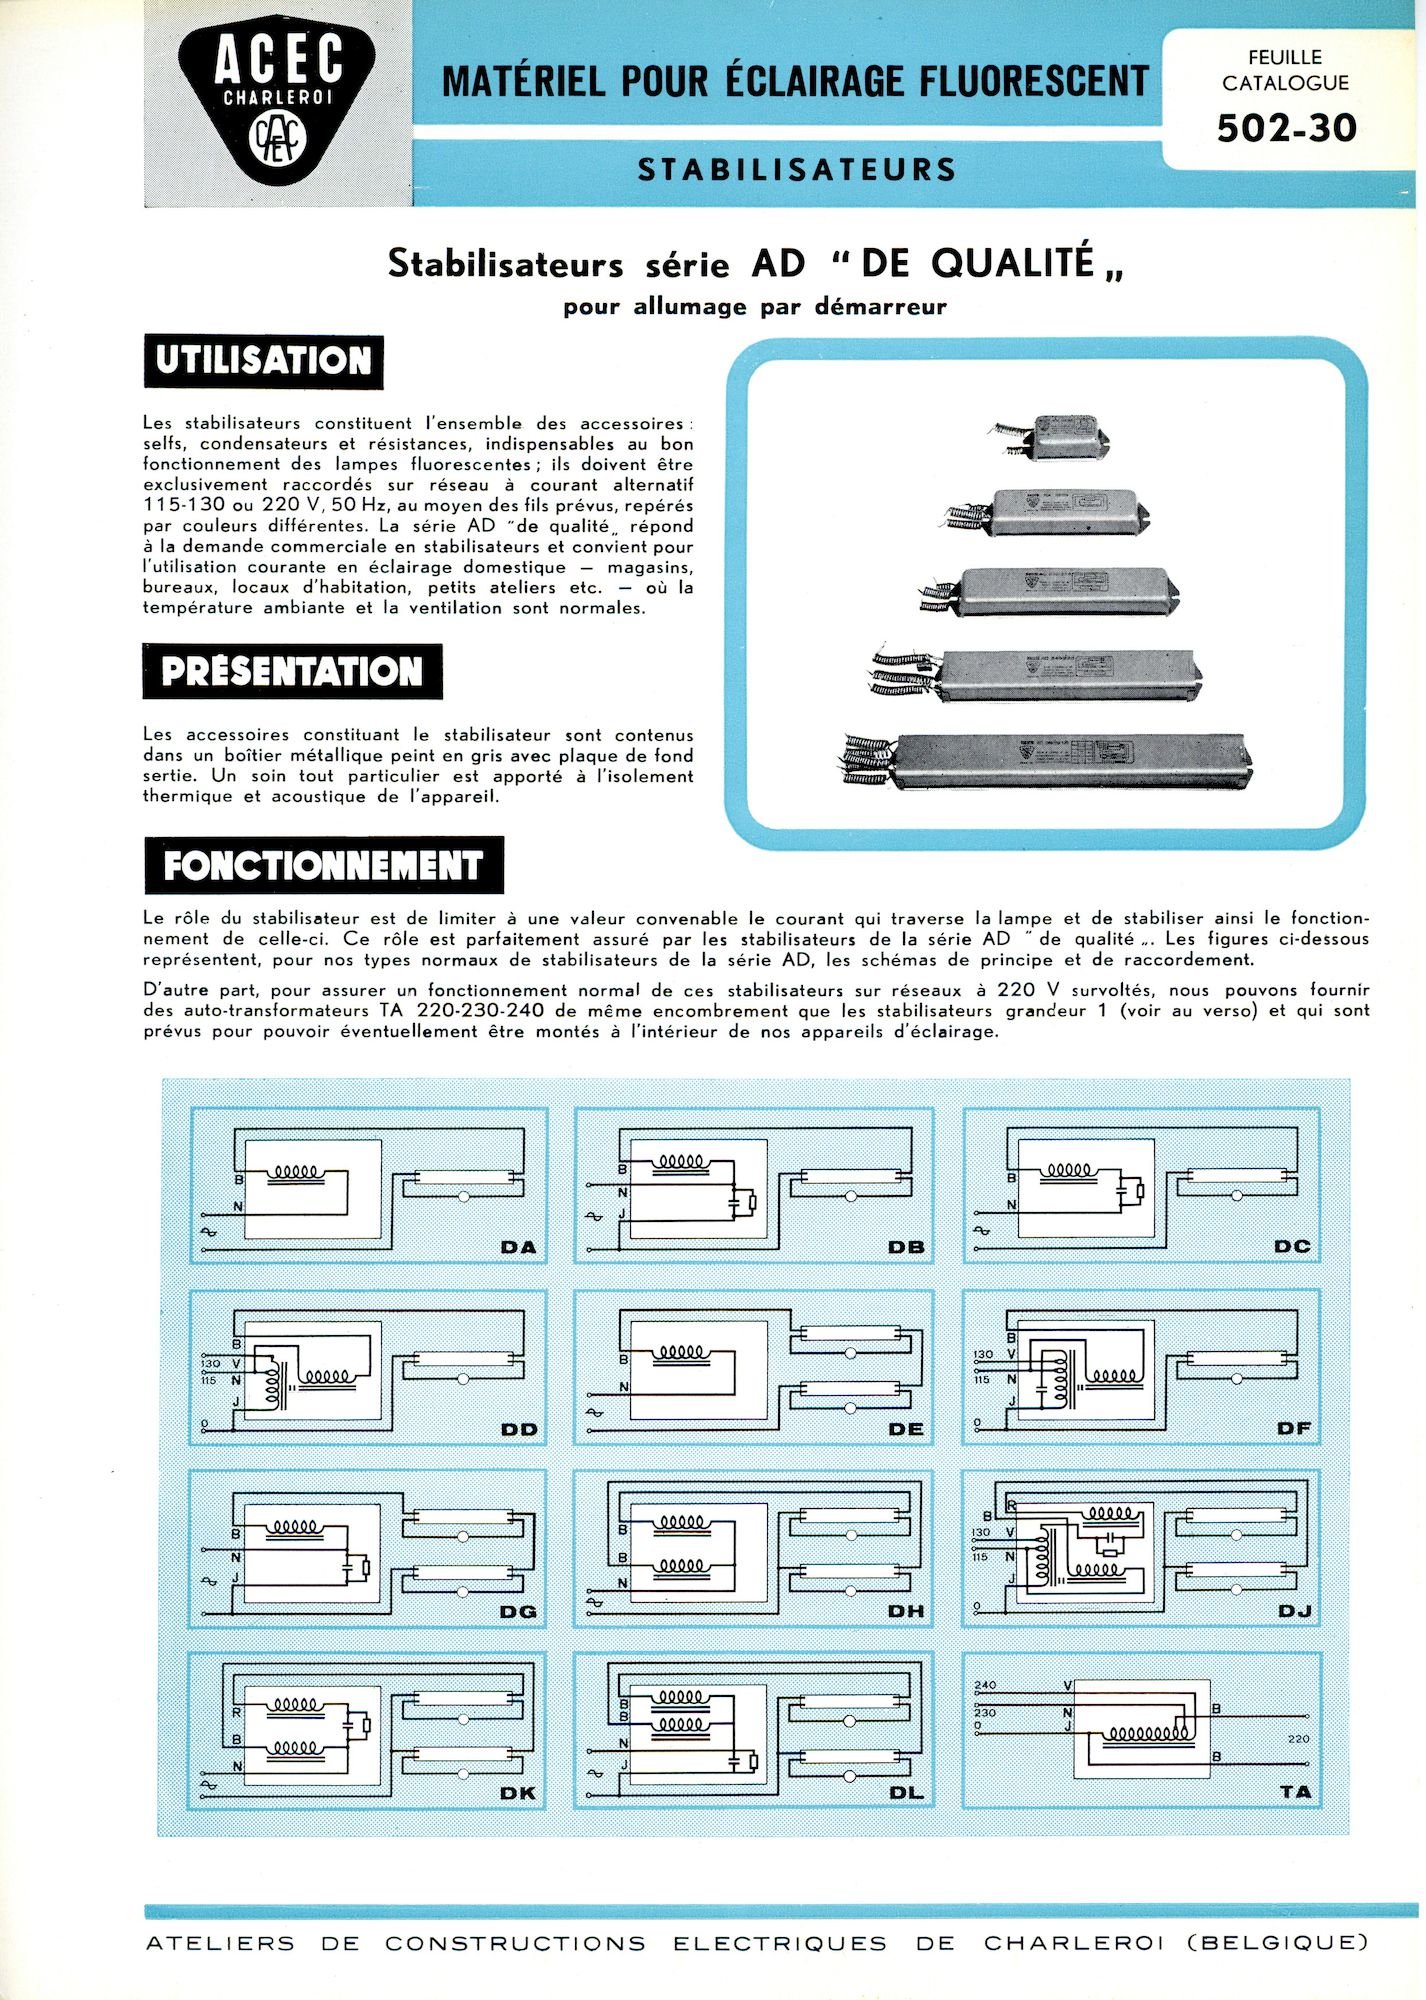 Technische informatiefiche over stabilisatoren voor verlichting